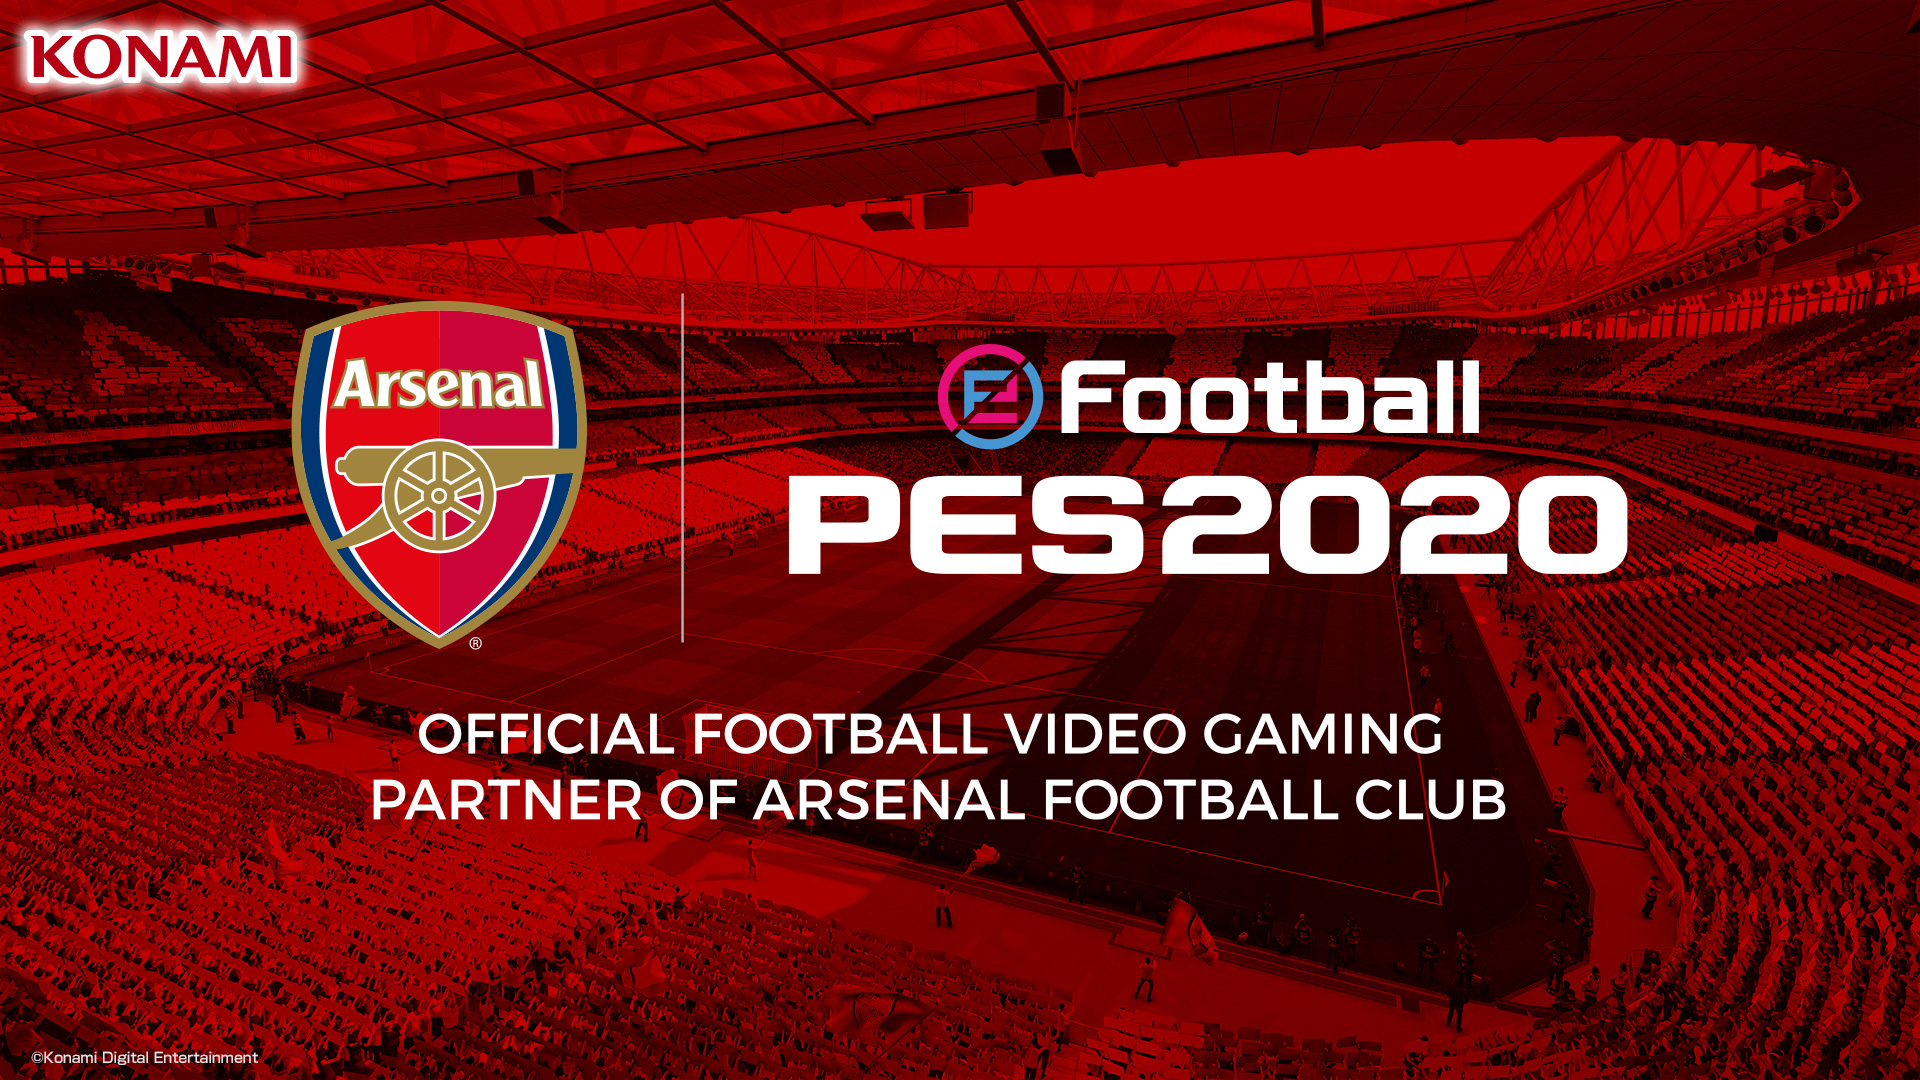 eFootball PES 2020: Konami e Arsenal FC estendono la collaborazione thumbnail